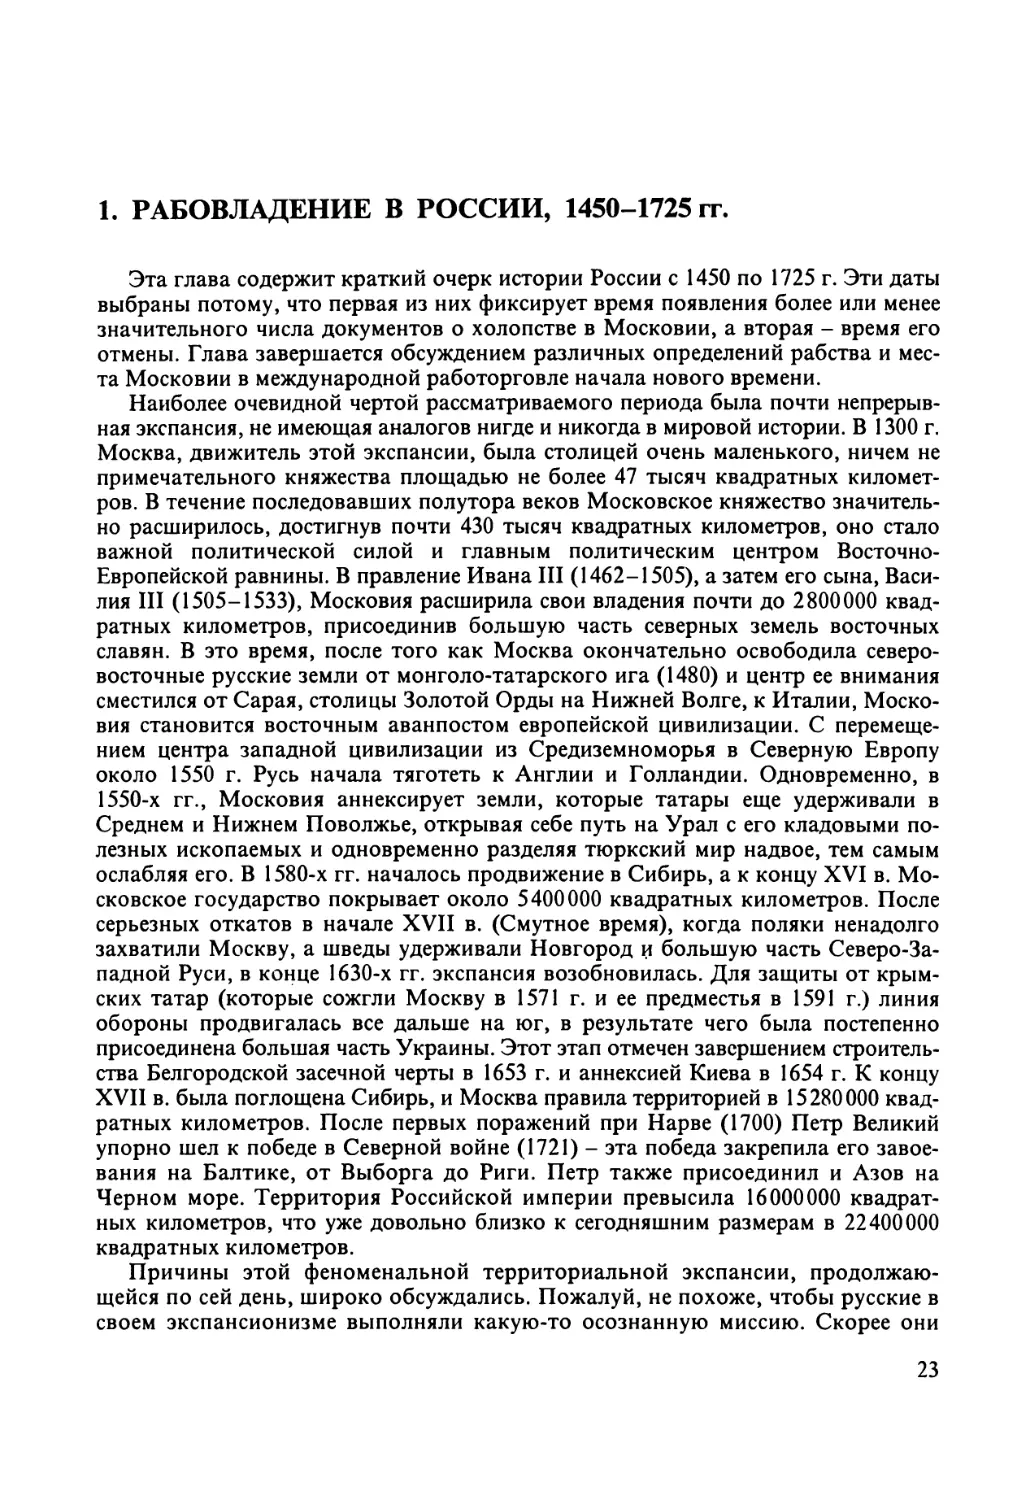 1. Рабовладение в России, 1450-1725 гг.